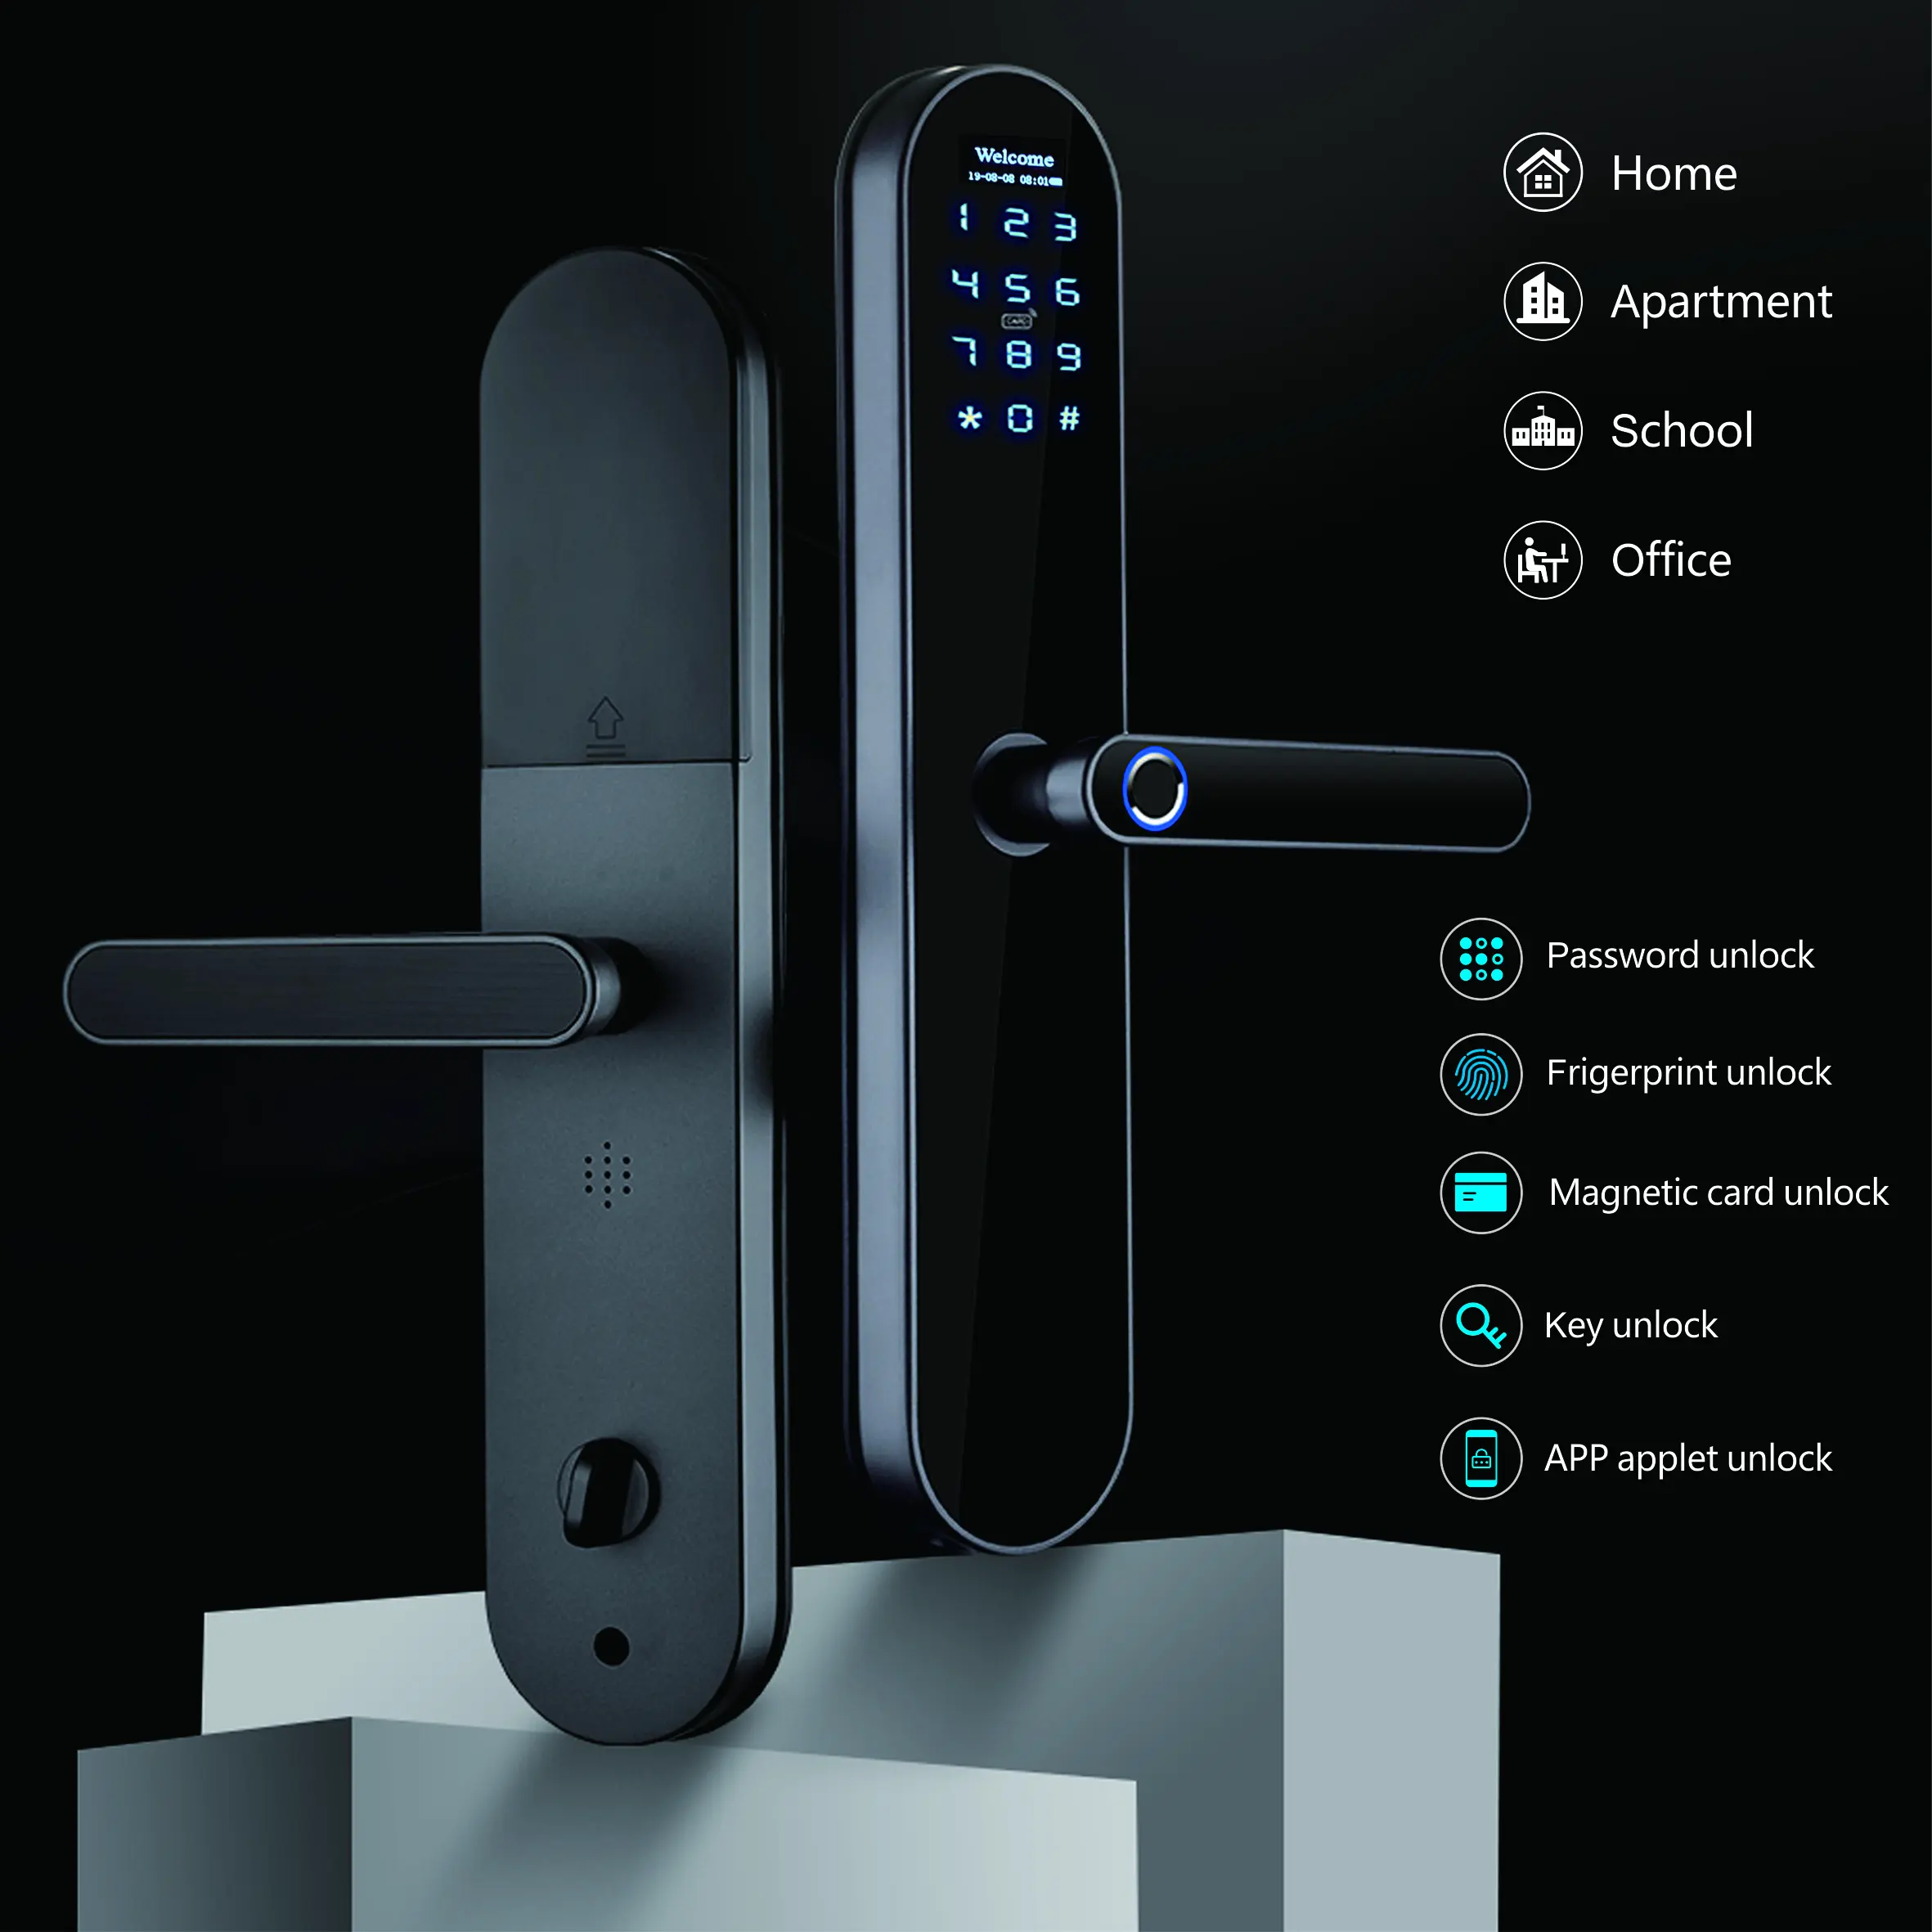 Keyking Intelligente Senza Fili di Blocco Delle Impronte Digitali keyless entry serratura di portello per la casa con Touch Screen